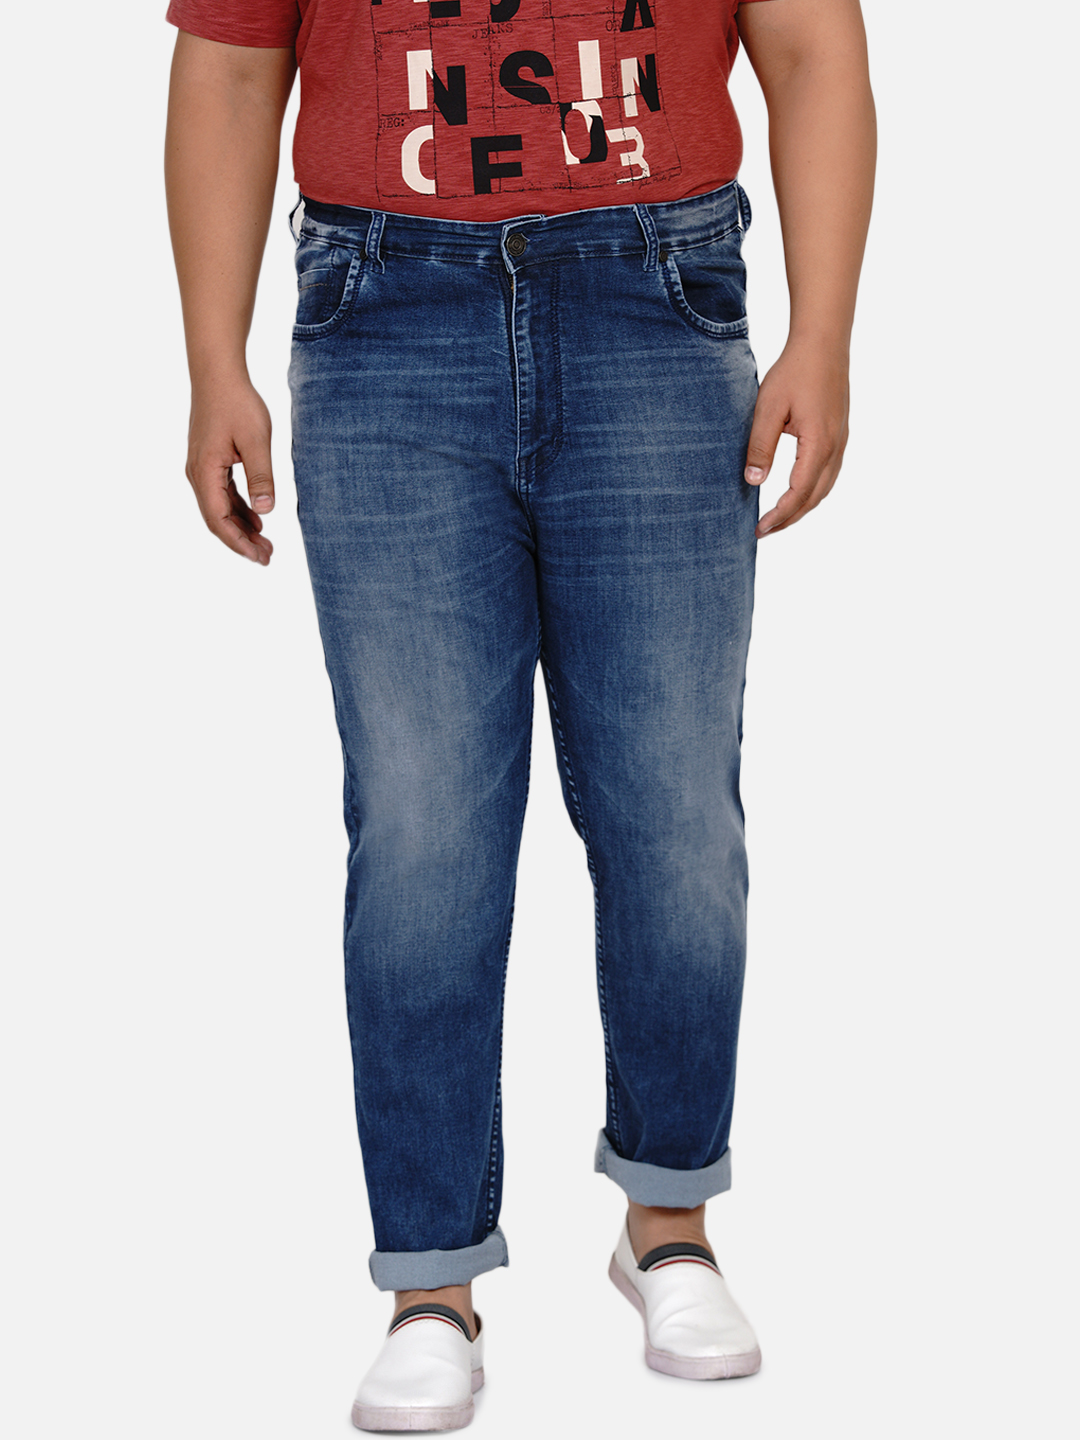 bottomwear/jeans/EJPJ25003/ejpj25003-3.jpg